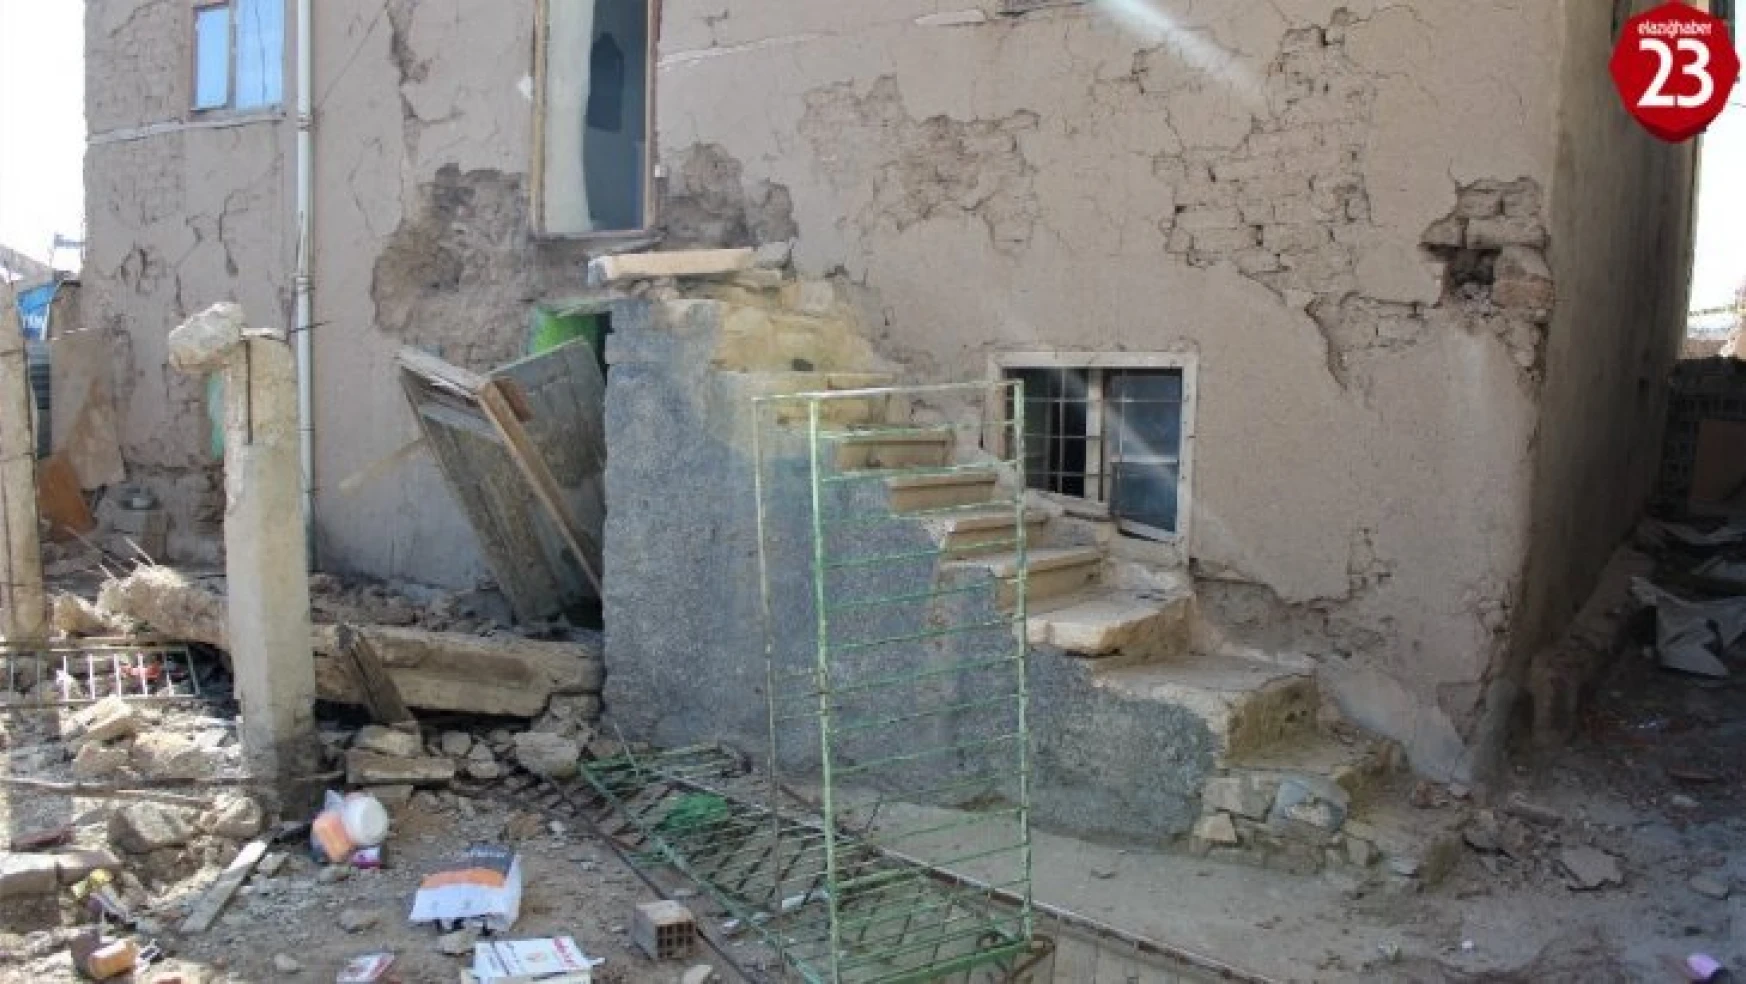 Elazığ'da hasarlı kerpiç evin balkonu yıkıldı: 1 ölü